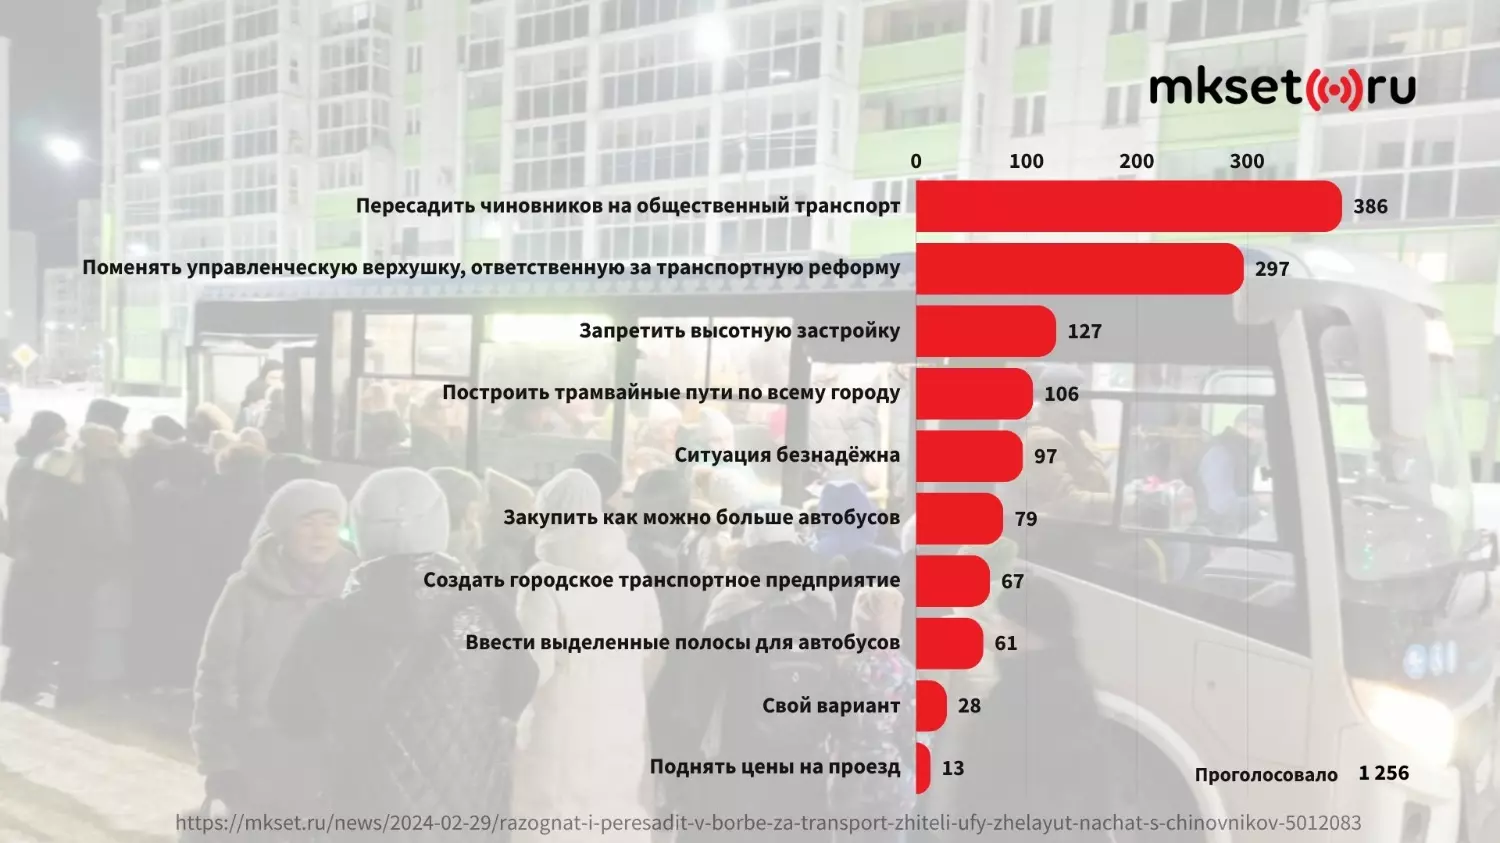 Результаты опроса, проведённого среди читателей Mkset.ru.